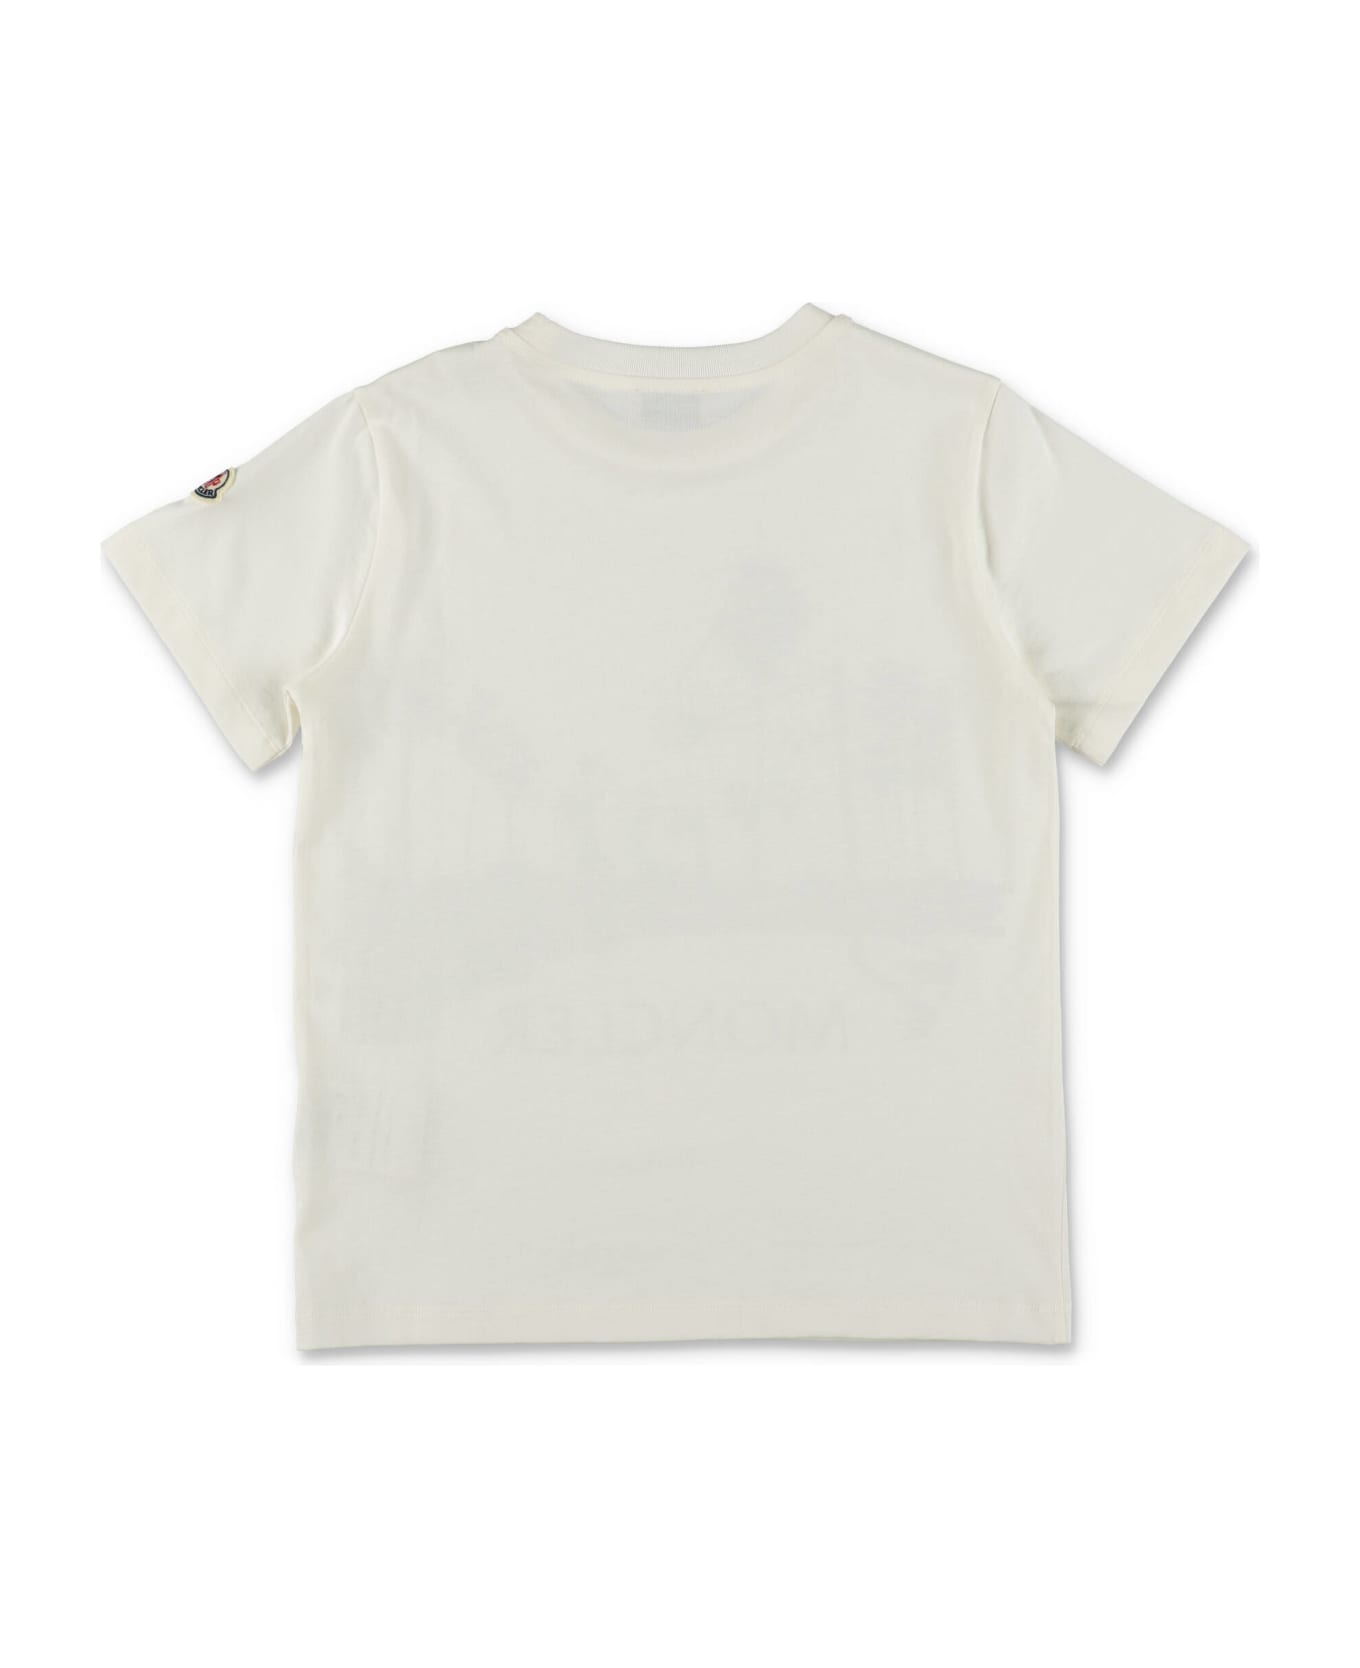 Moncler T-shirt Bianca In Jersey Di Cotone Bambino - Bianco Tシャツ＆ポロシャツ